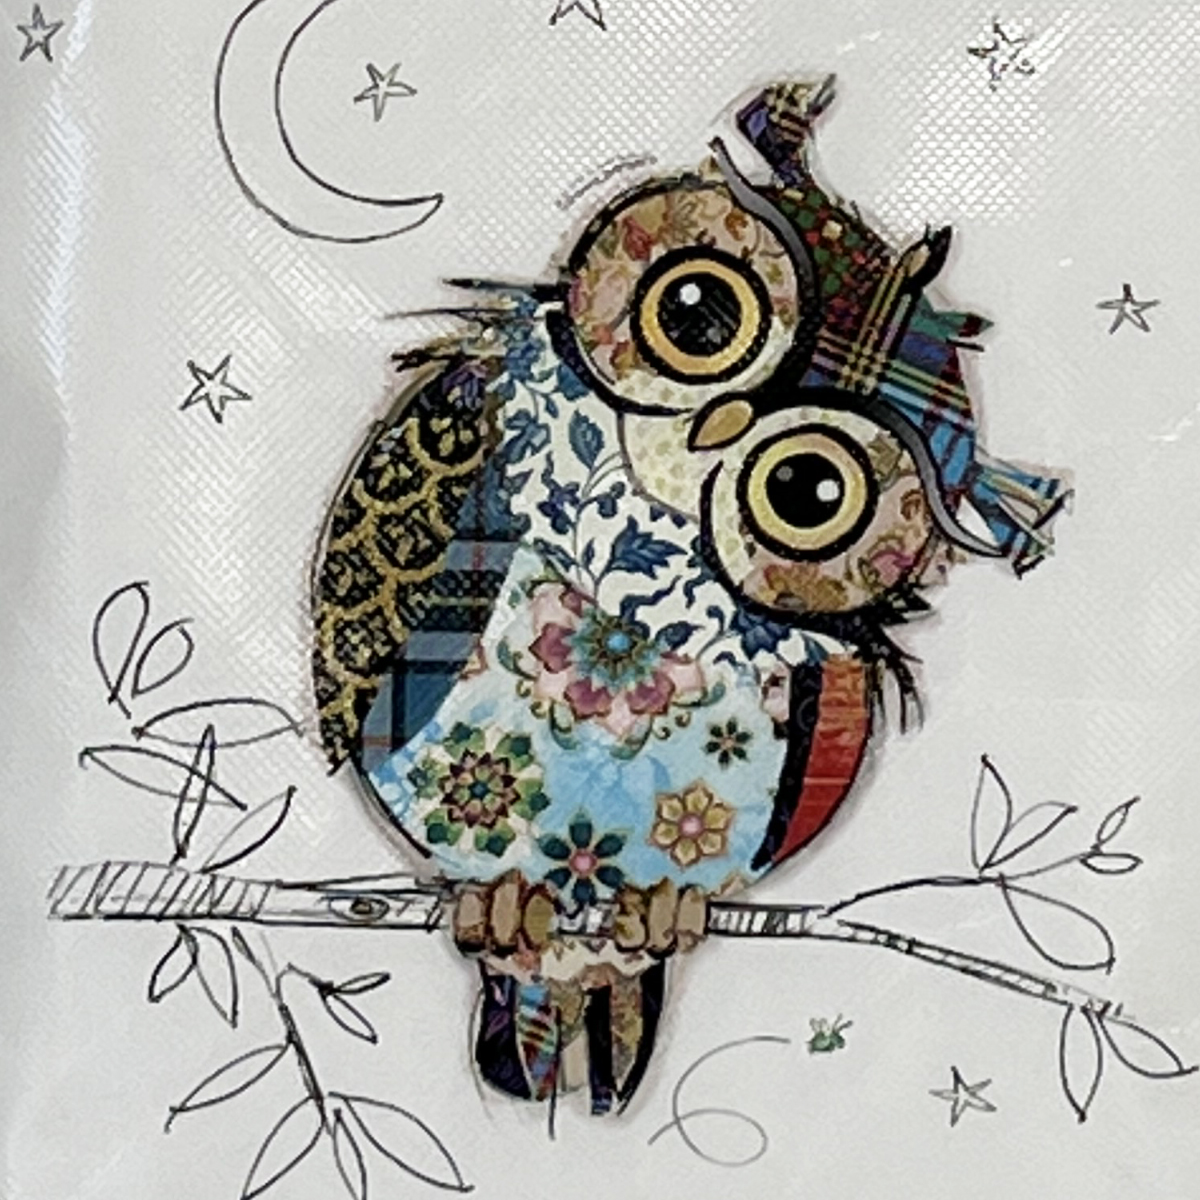 Kiub Collection Bug Art Owl Cool Bag